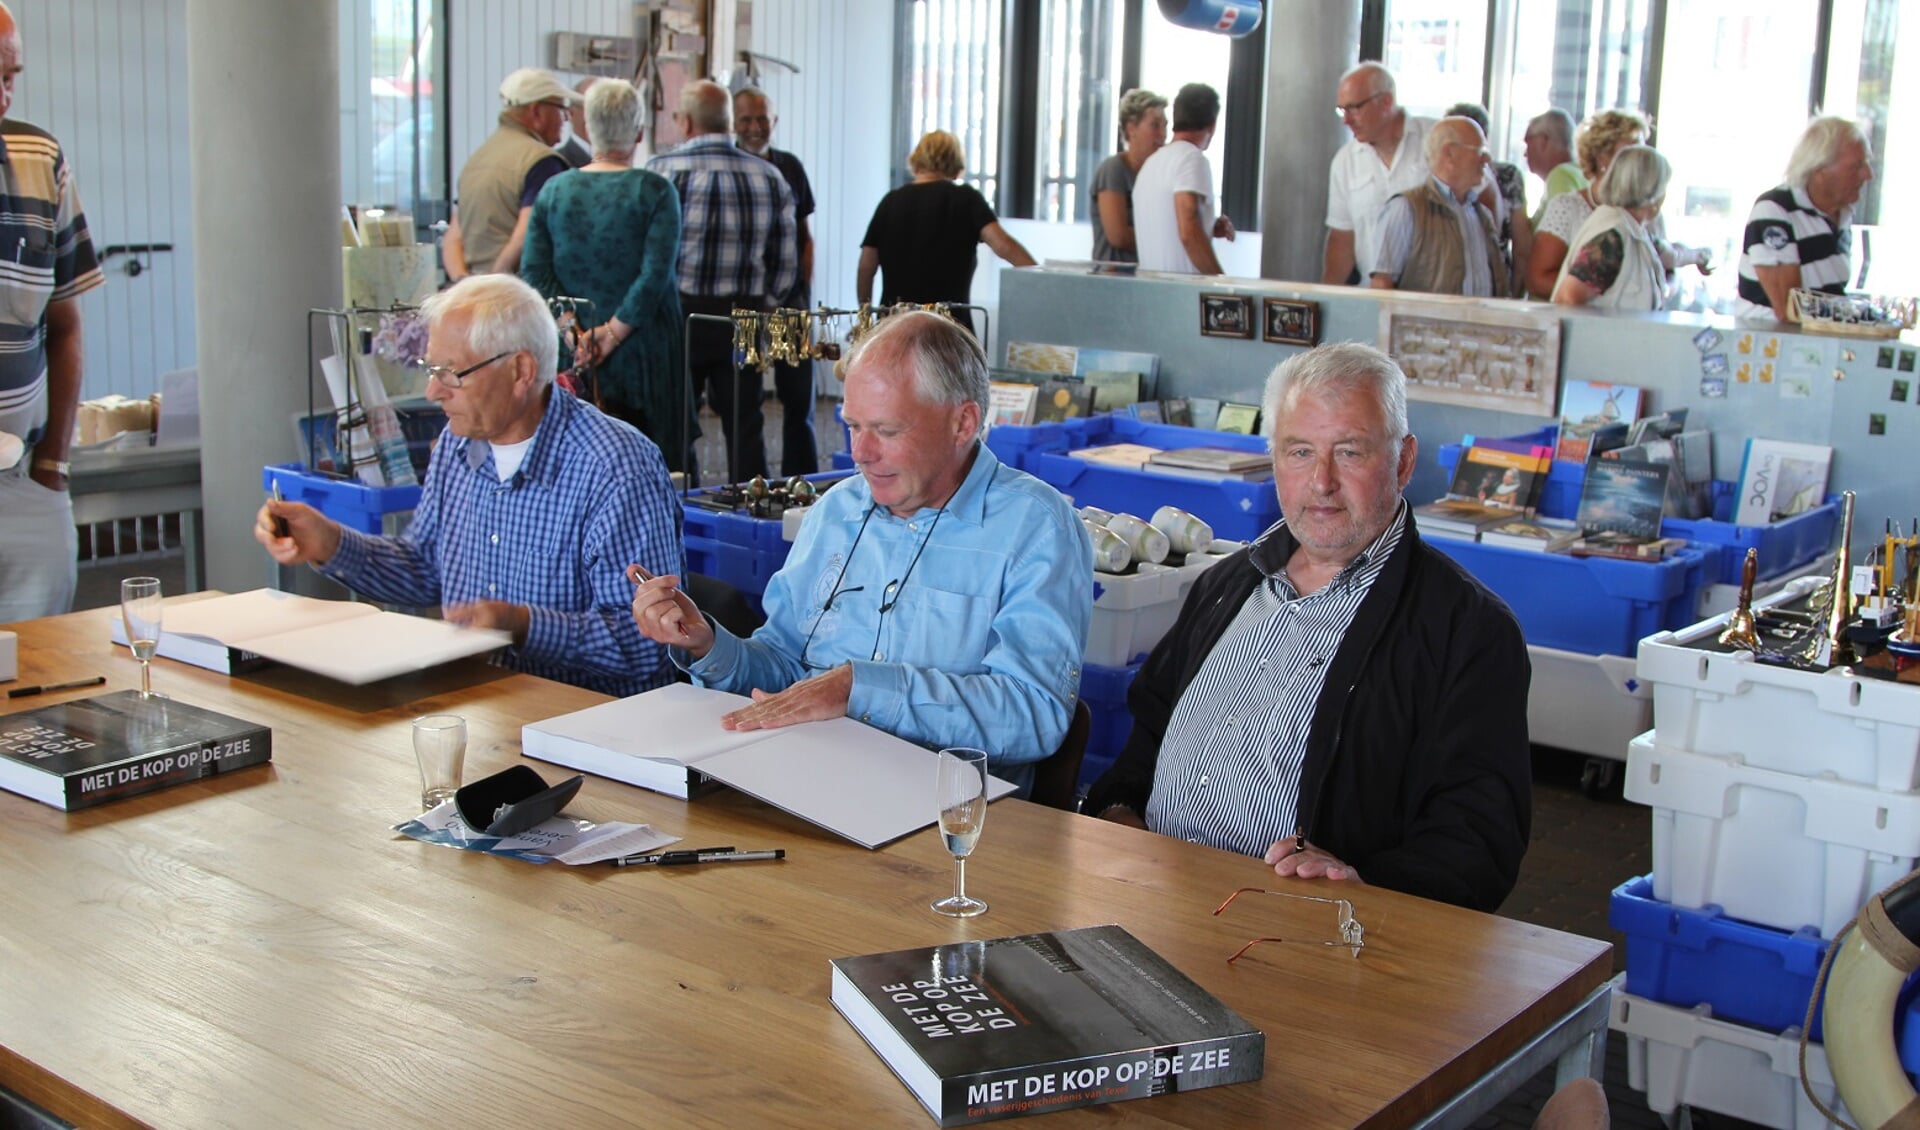 Cor de Wolf, Frits Aalderink en Sam van der Slikke signeren na afloop van de boekpresentatie in Kaap Skil